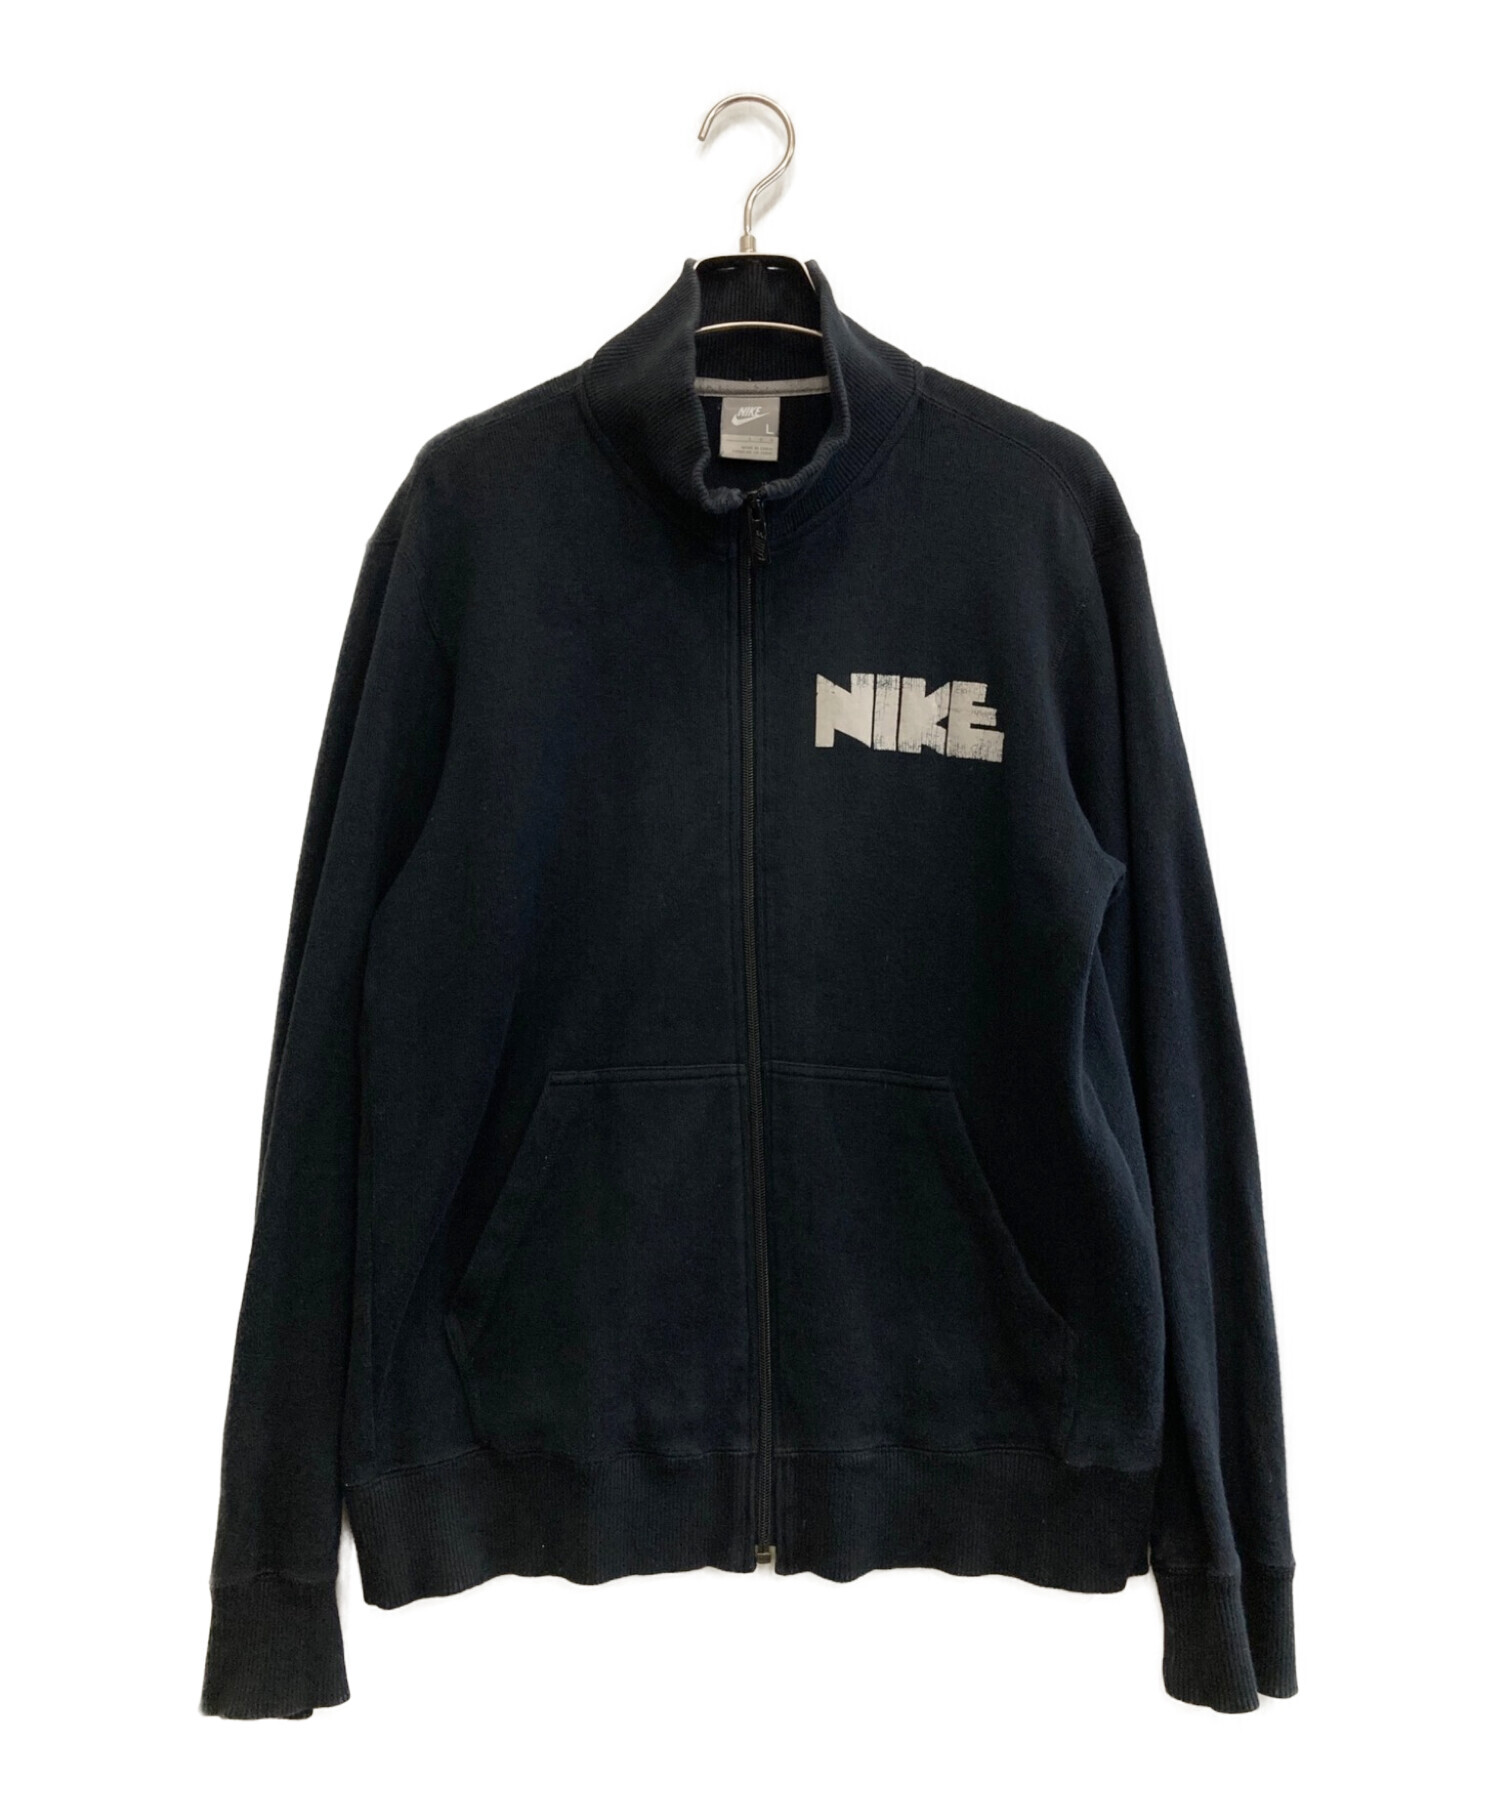 NIKE (ナイキ) ゴツナイキジップジャケット ブラック サイズ:L